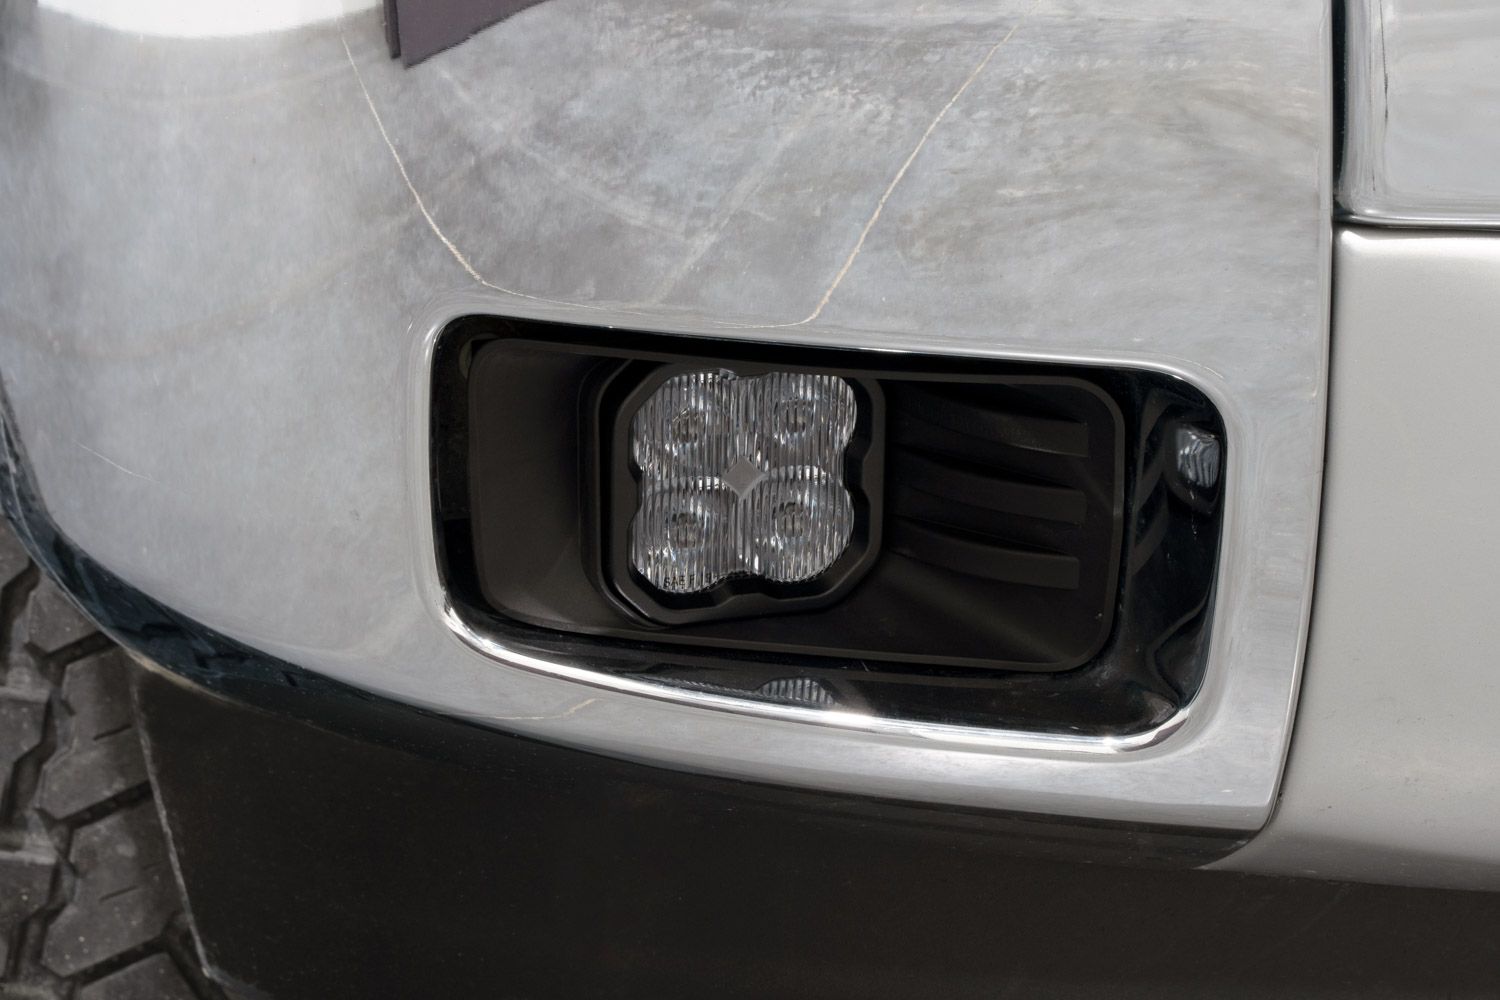 SS3 LED Fog Light Kit for 2007-2014 Chevrolet Silverado 2500/3500 HD